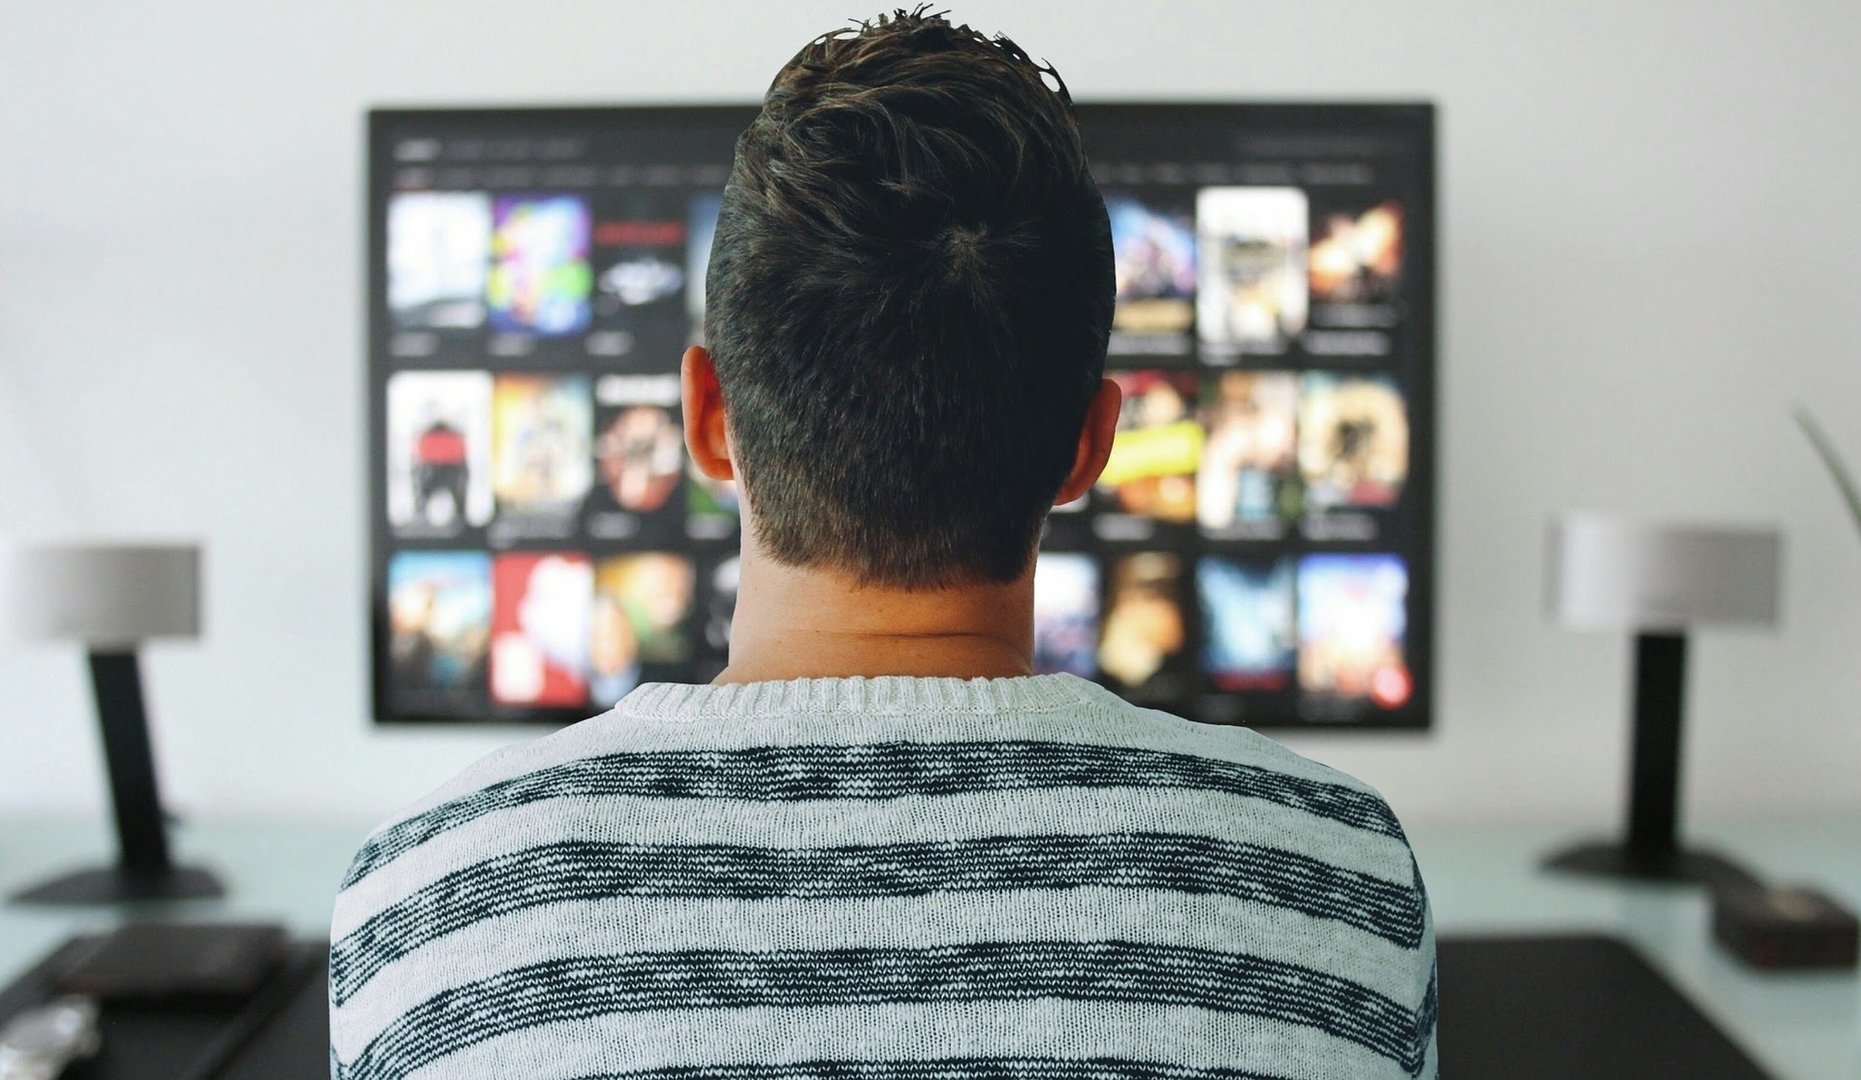 El consumo televisivo cae a sus cifras más bajas en 2023